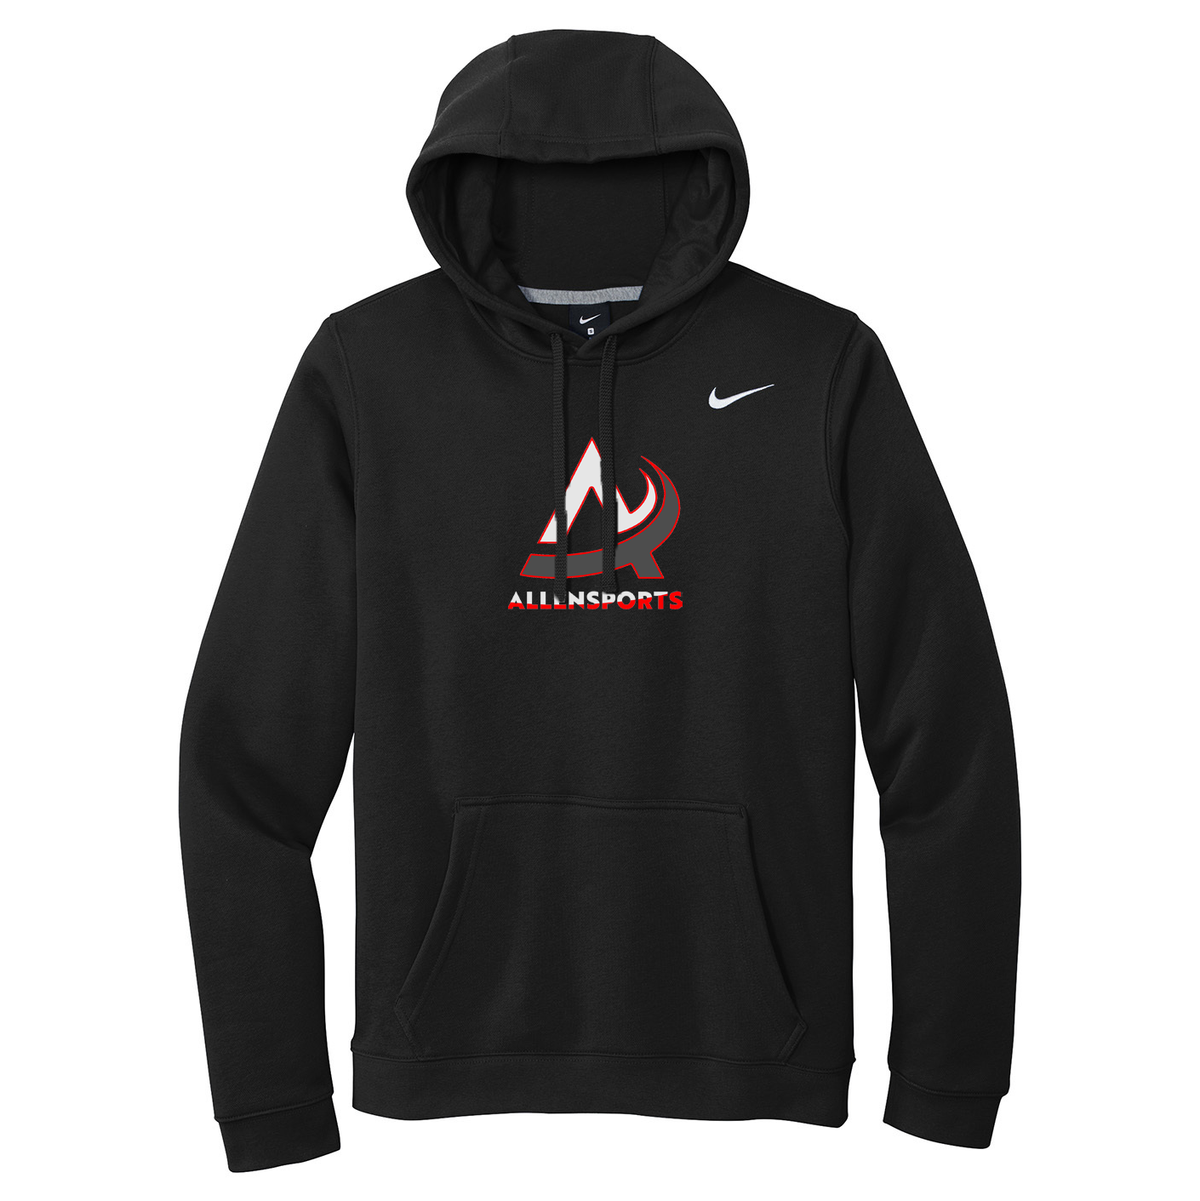 AllenSports Nike Fleece Sweatshirt